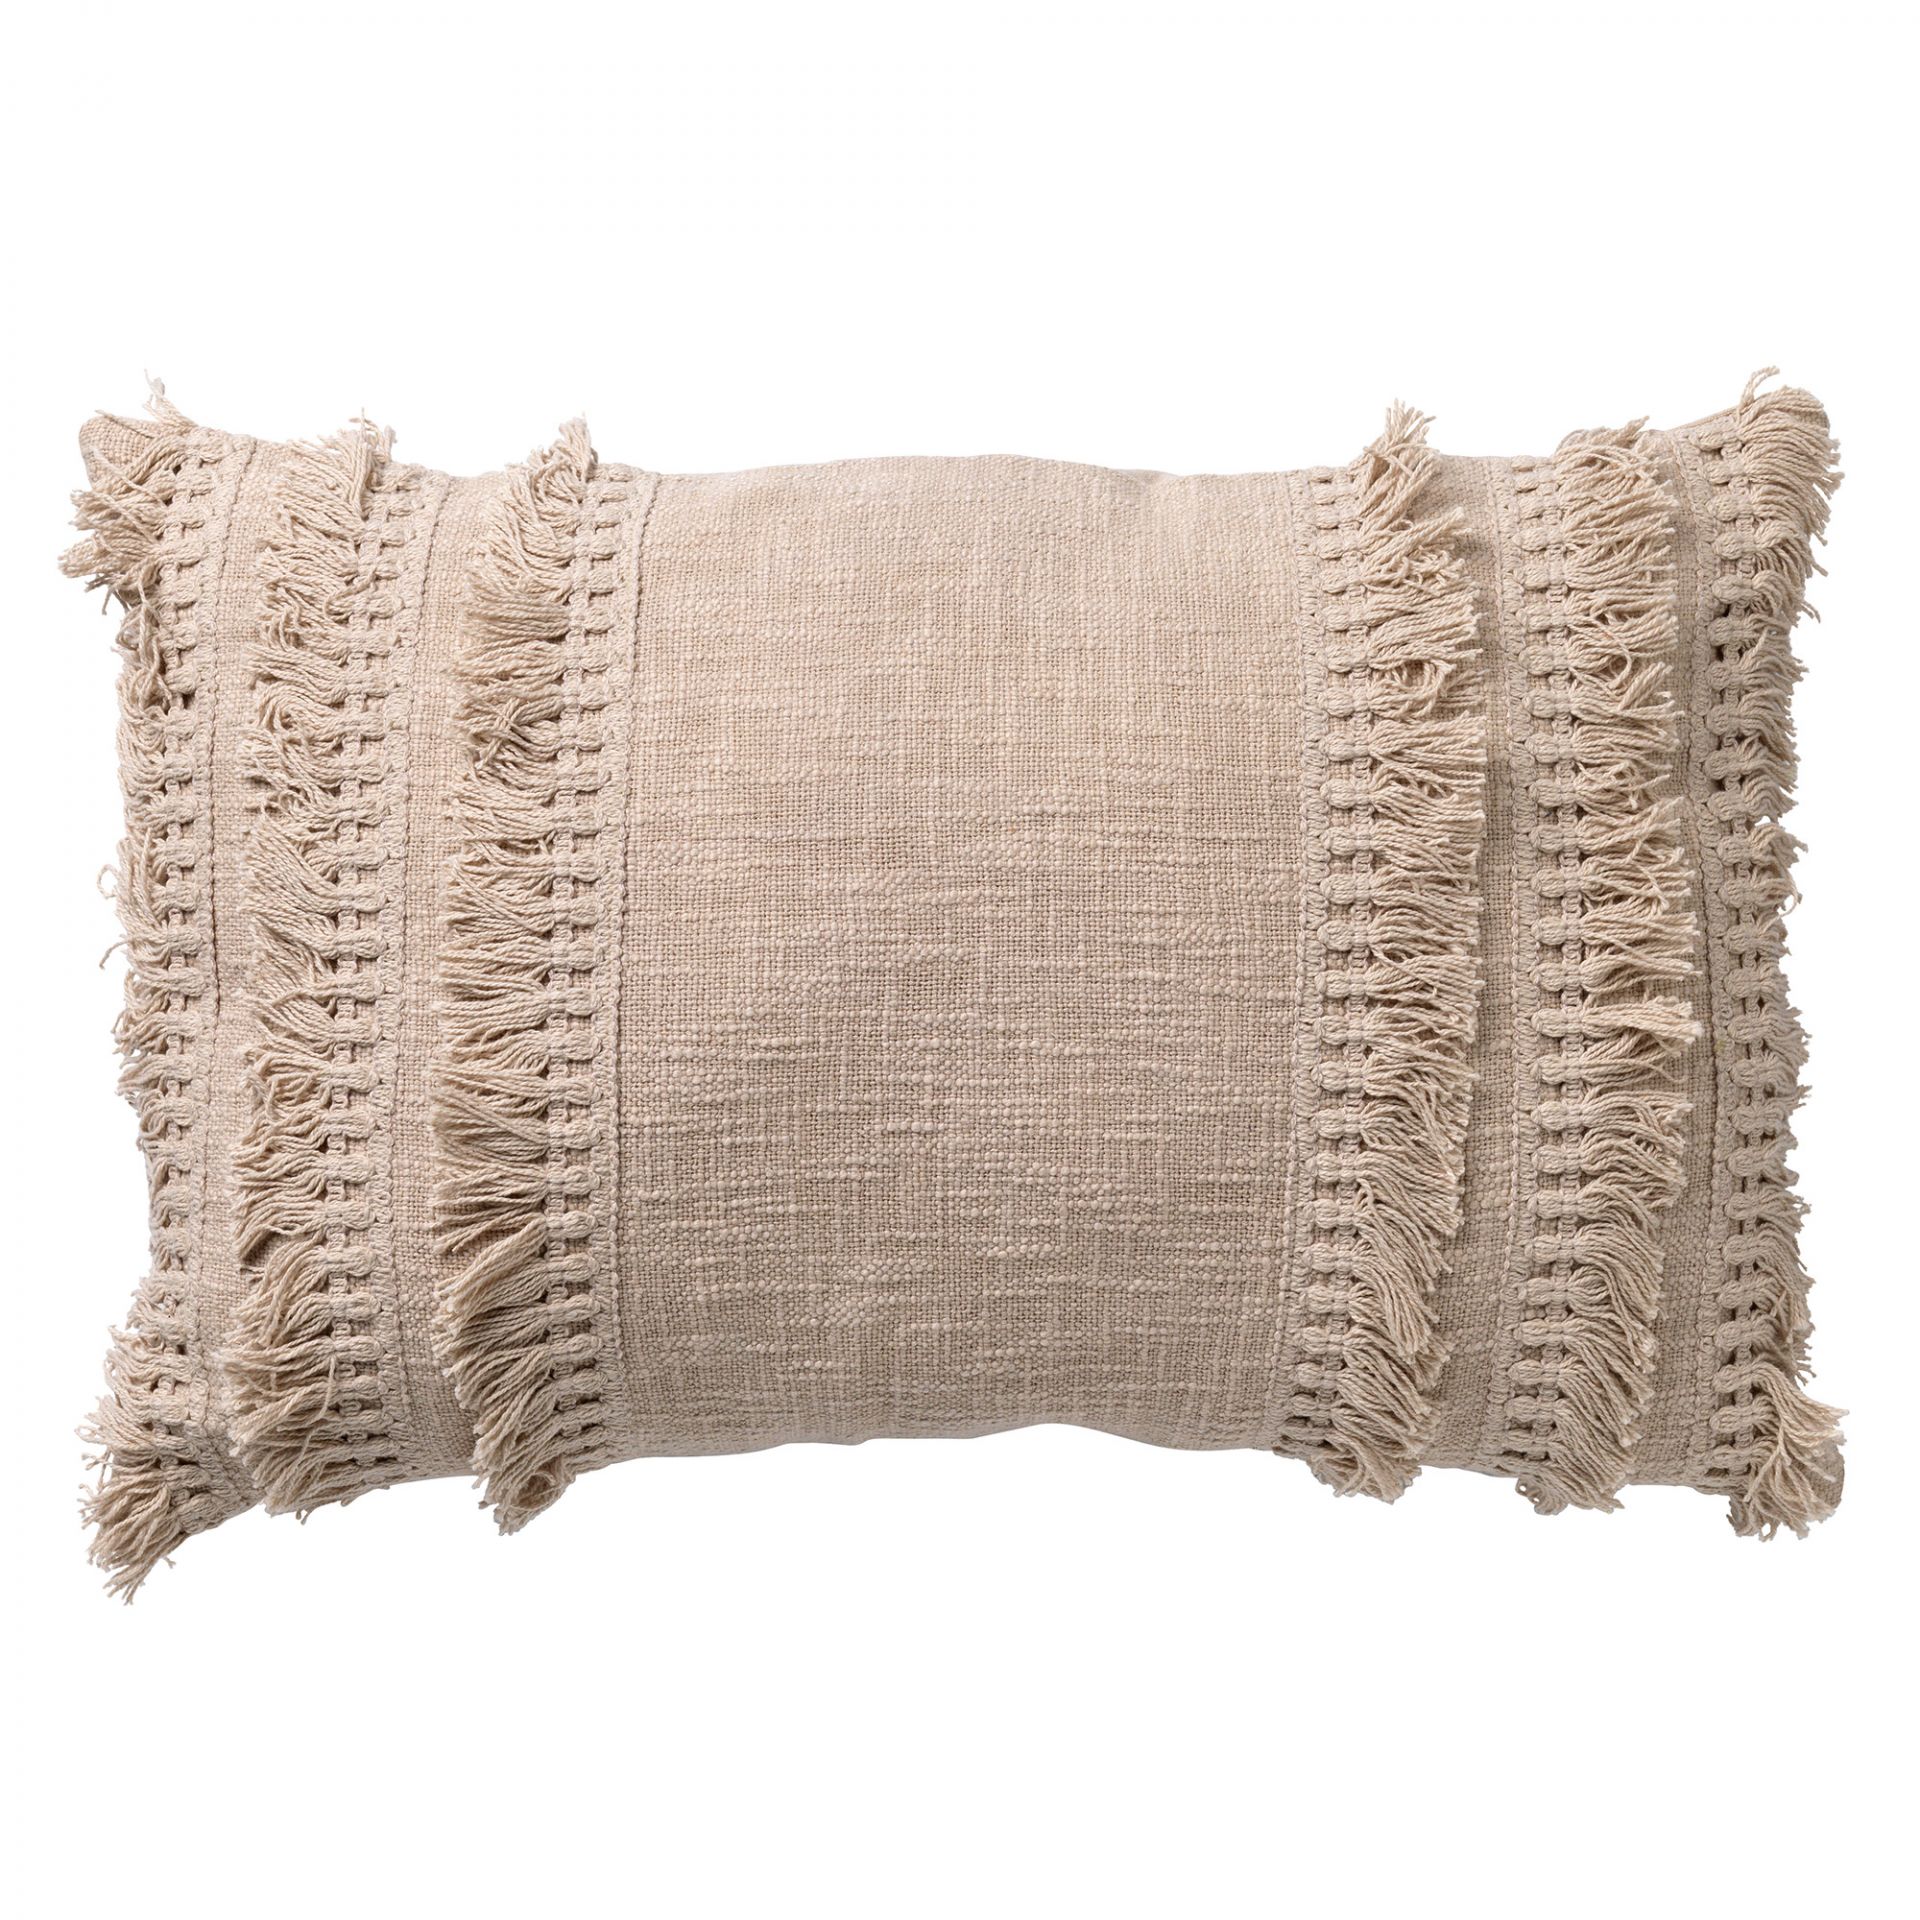 FARA - Cushion cover cotton 40x60 cm Pumice Stone - beige